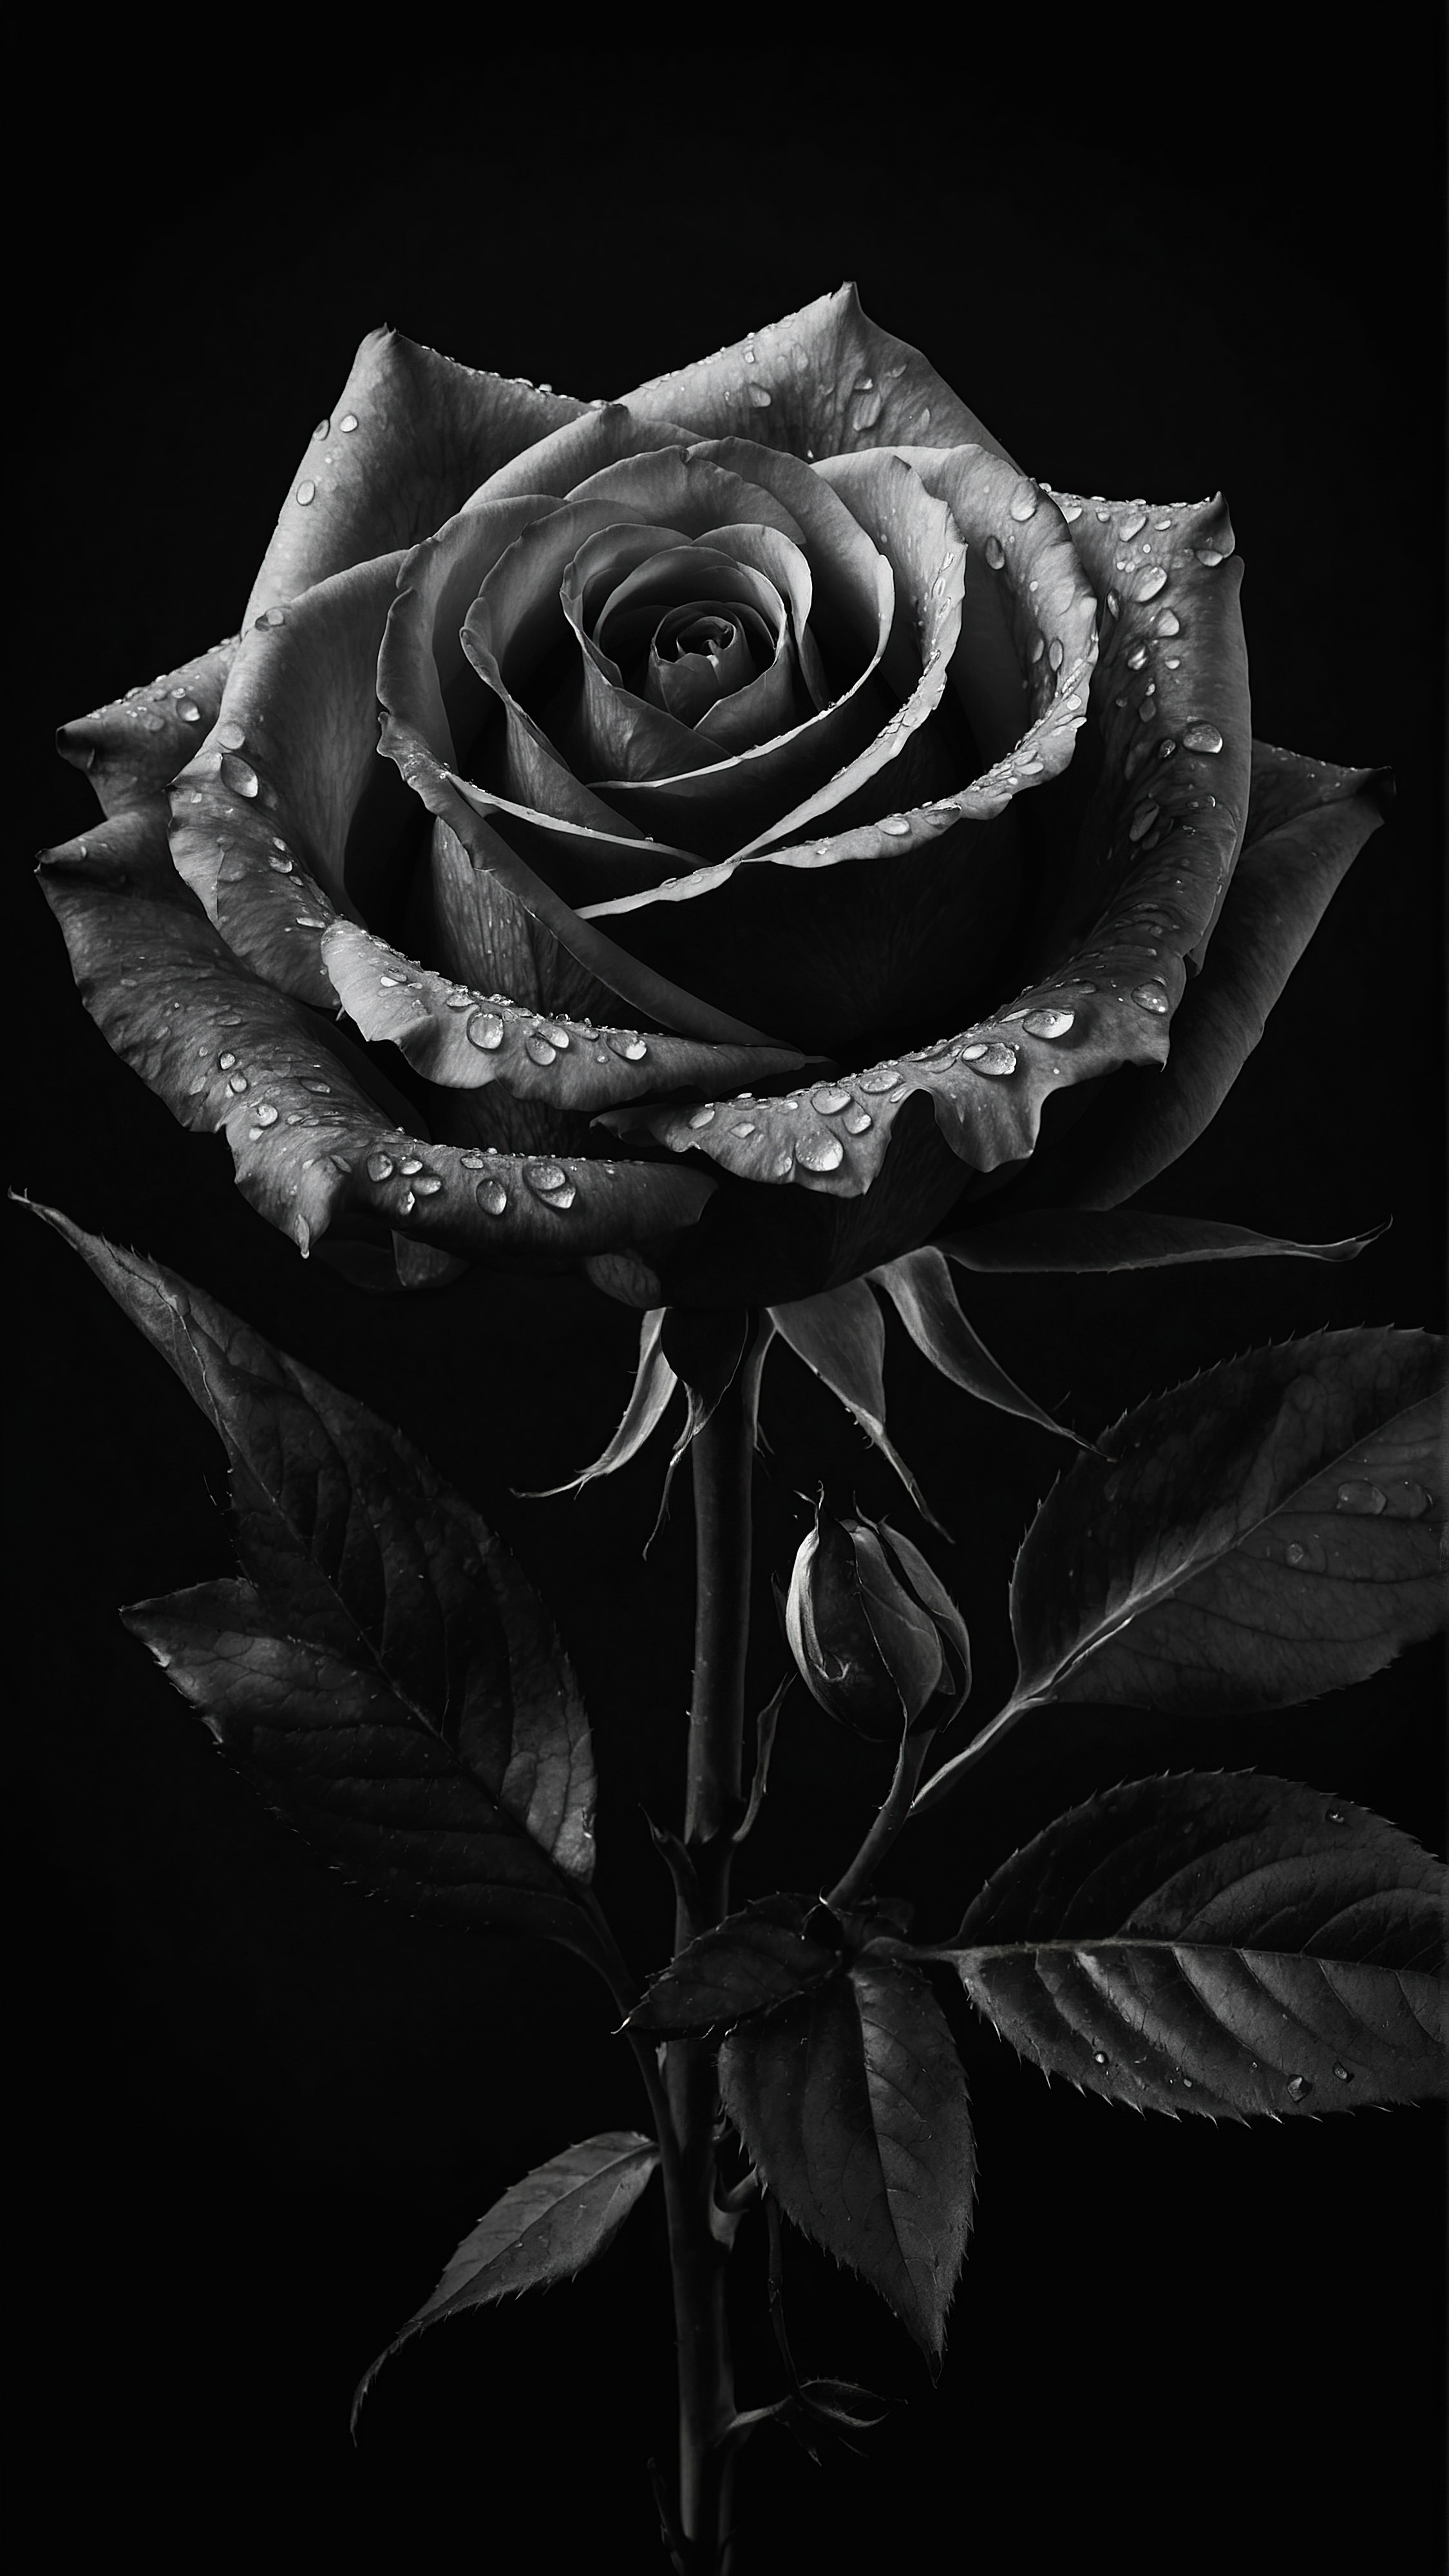 Appréciez l'élégance d'une rose aux détails complexes, sur un fond sombre, à travers notre fond d'écran esthétique noir pour iPhone.